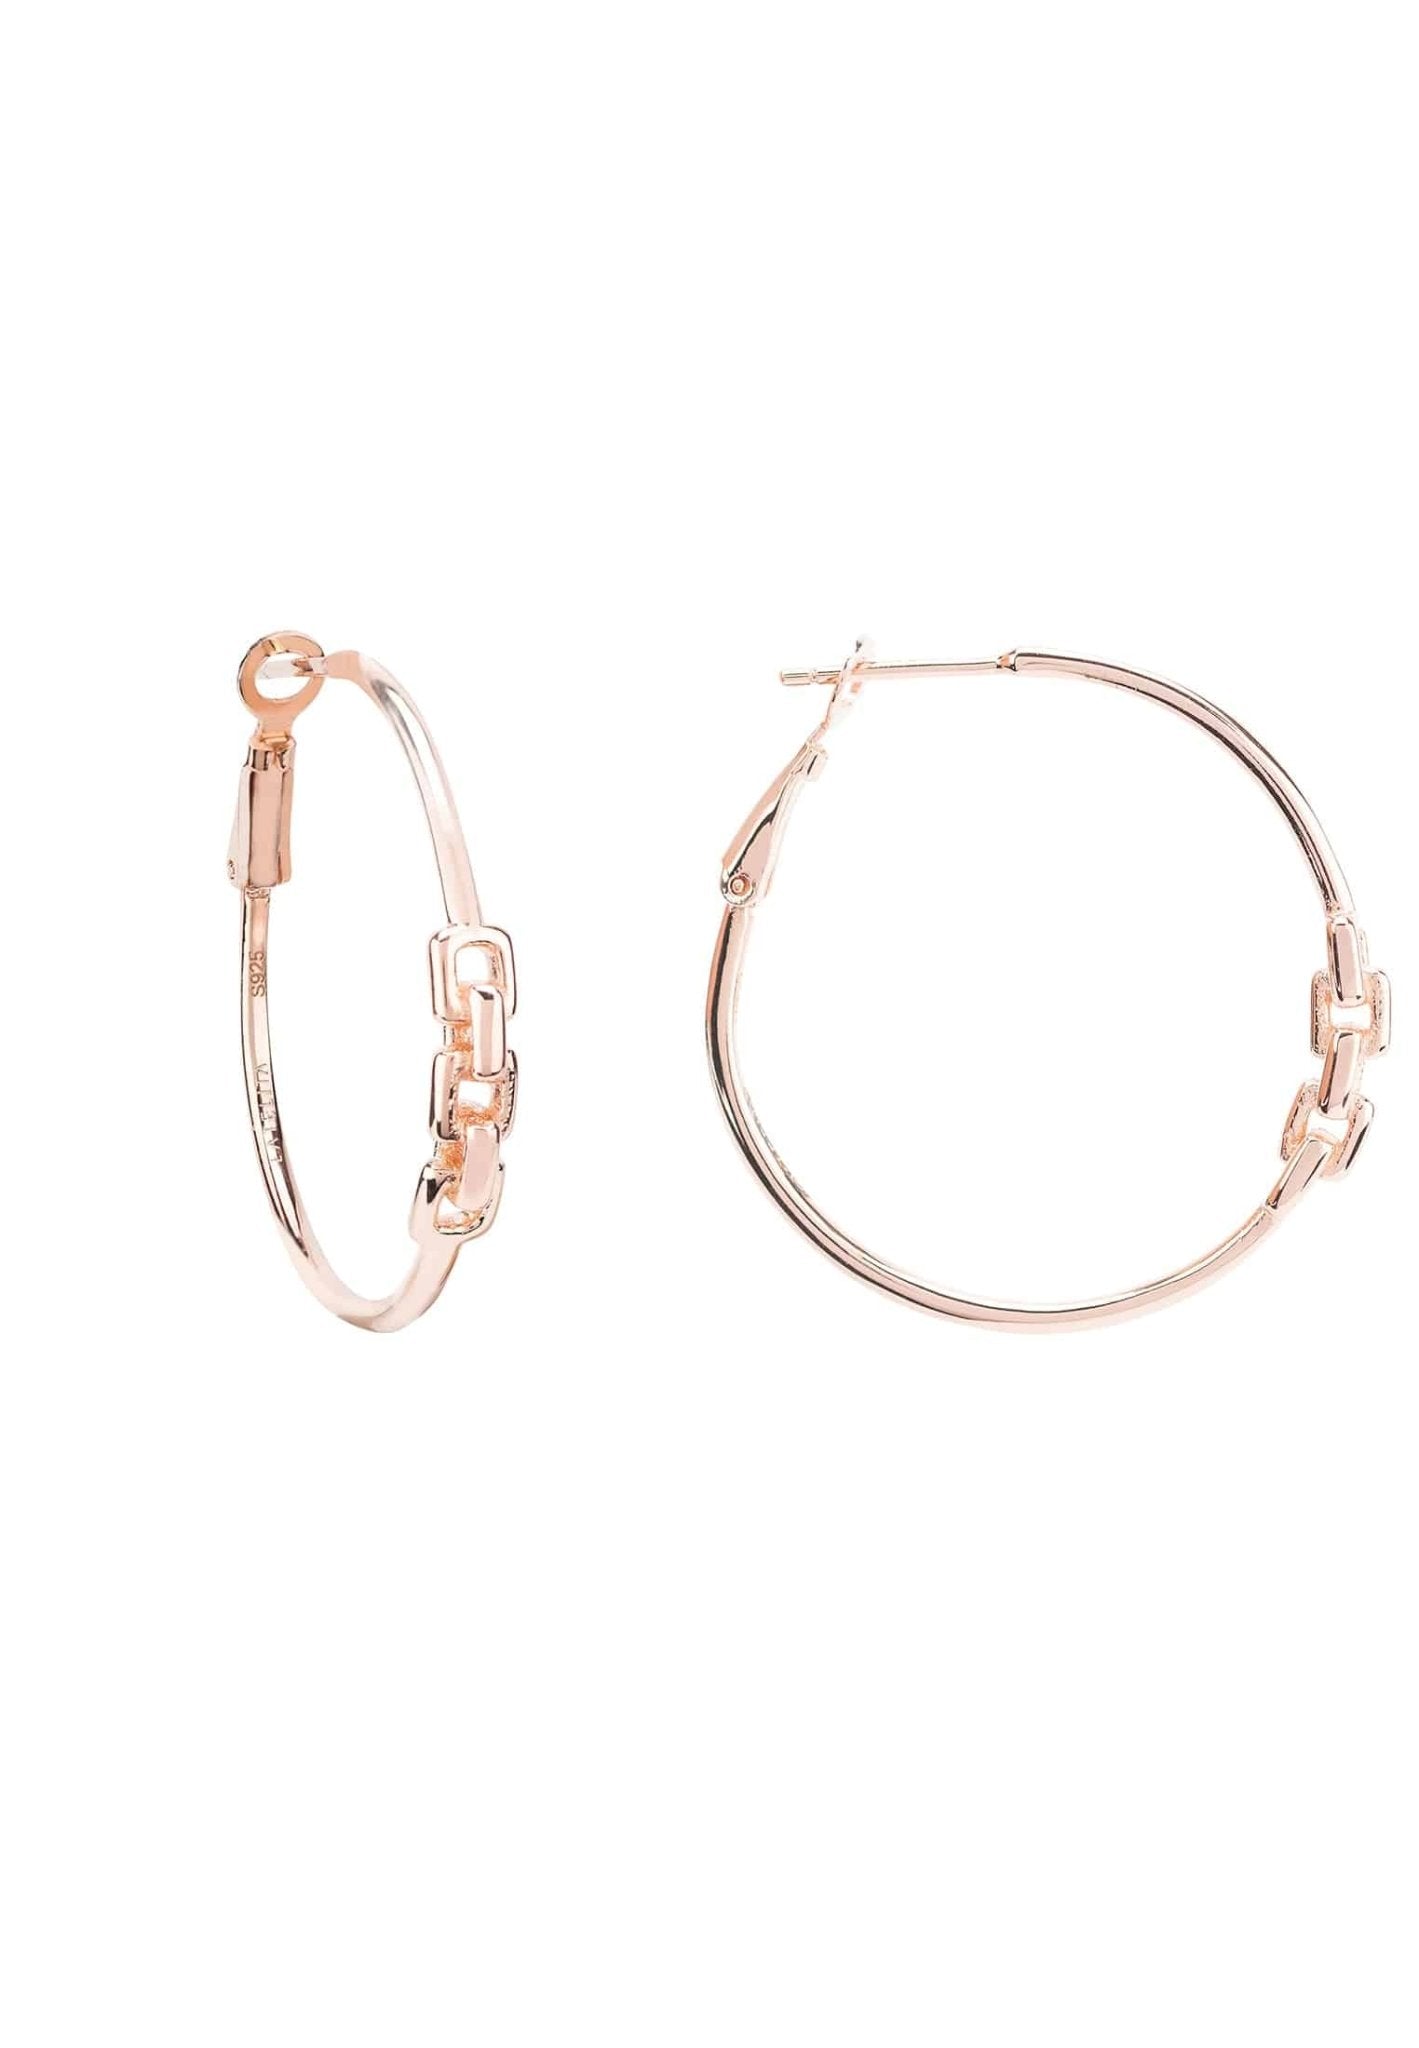 Linked Hoop Earrings Rosegold - LATELITA Earrings